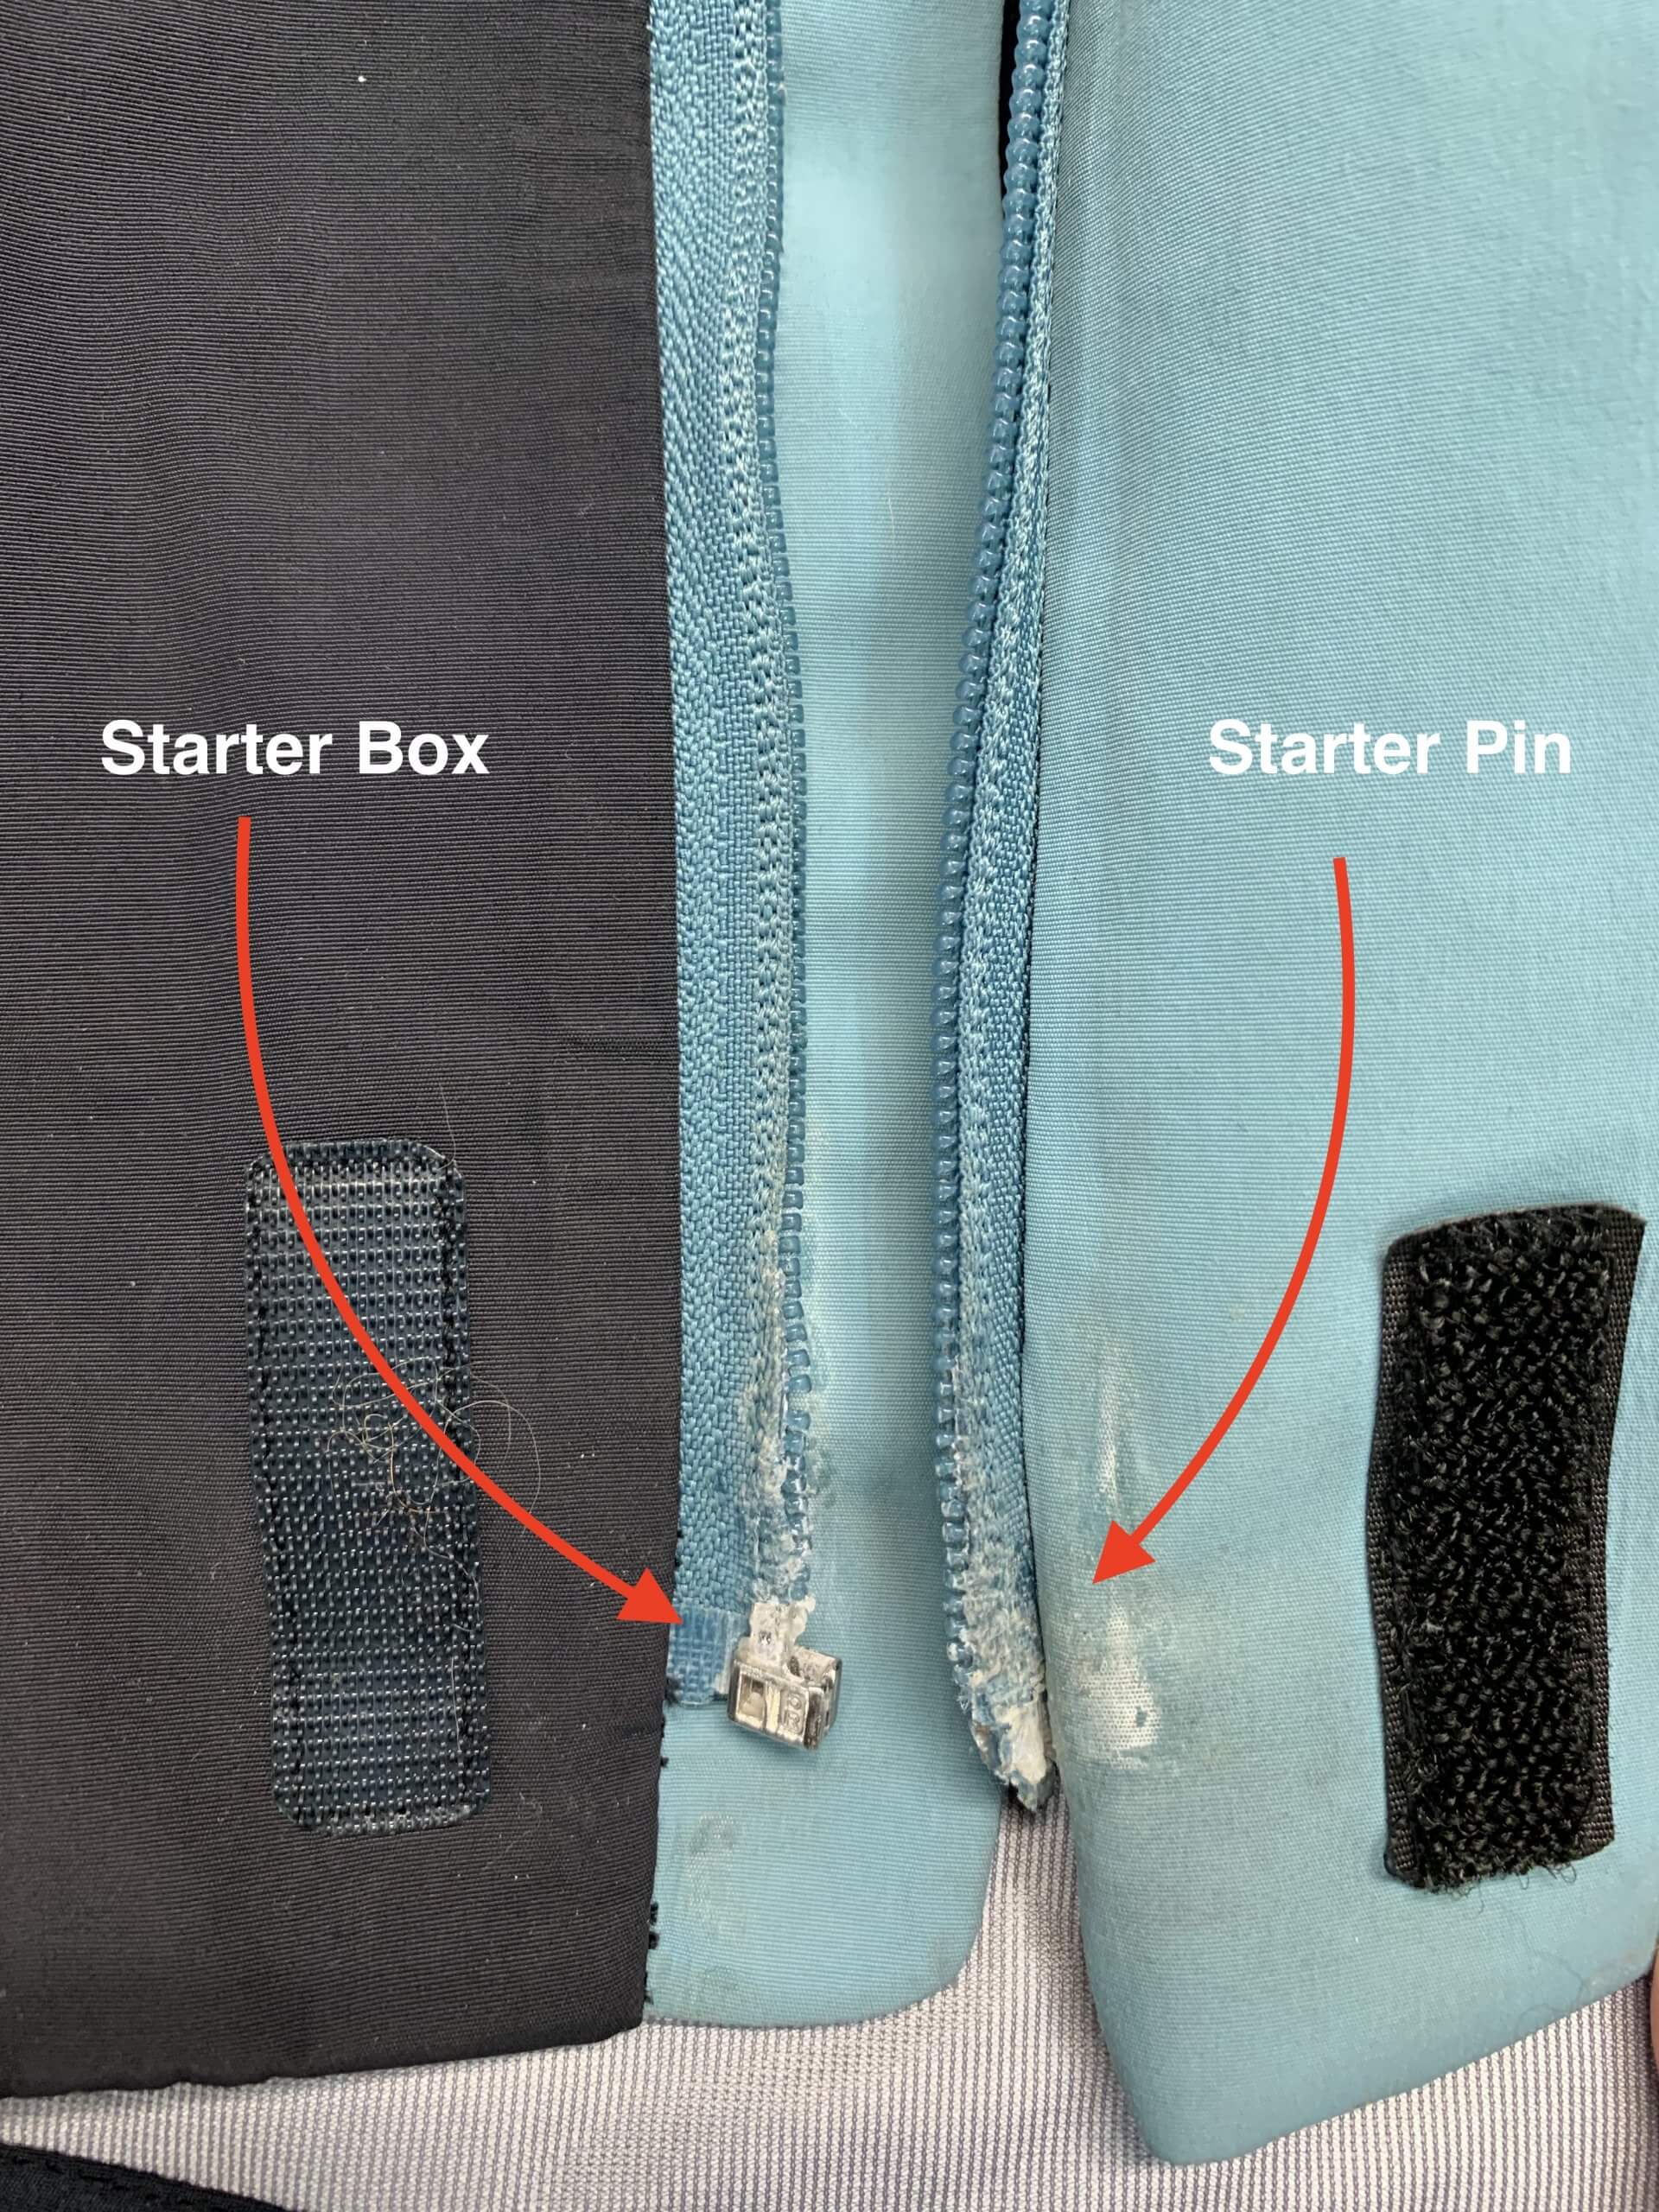 How to Fix a Zipper When It's Broken - Outside Online